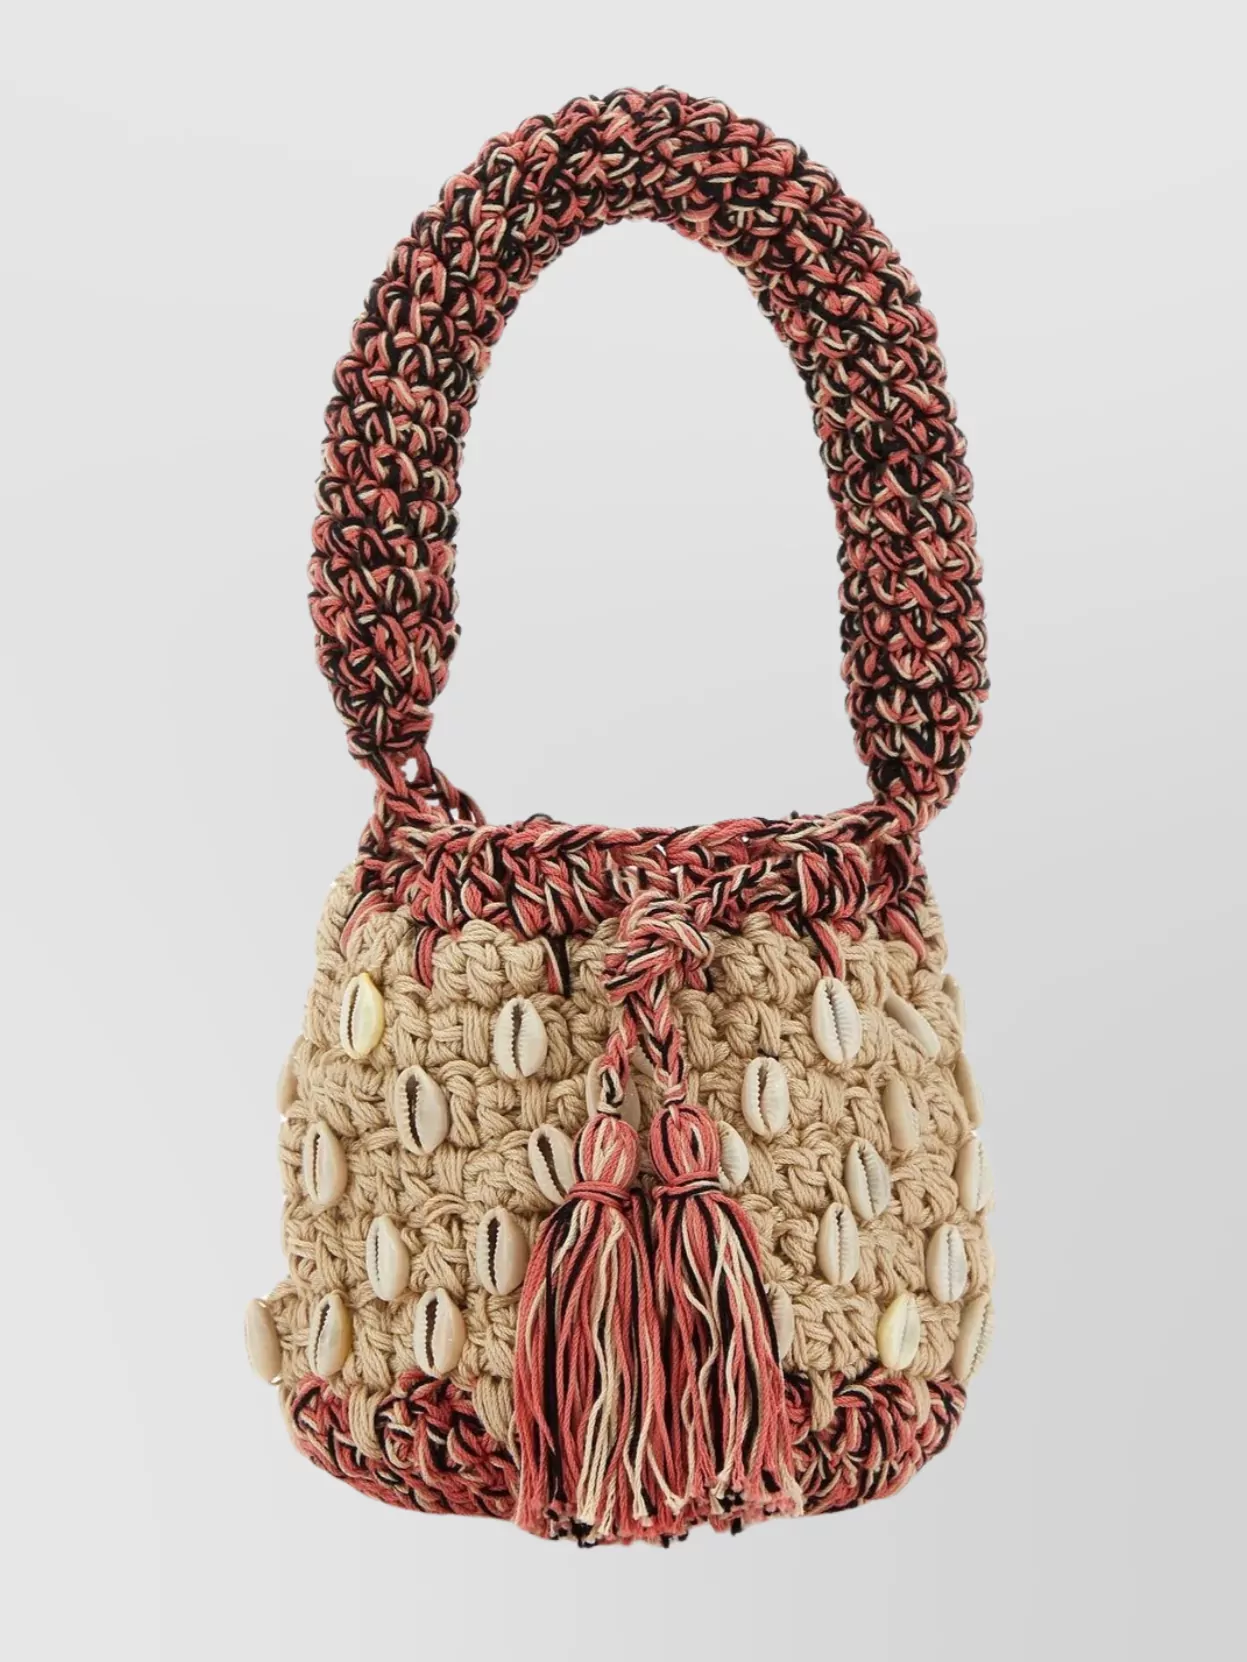 Alanui Crochet Seashell Mini Bag